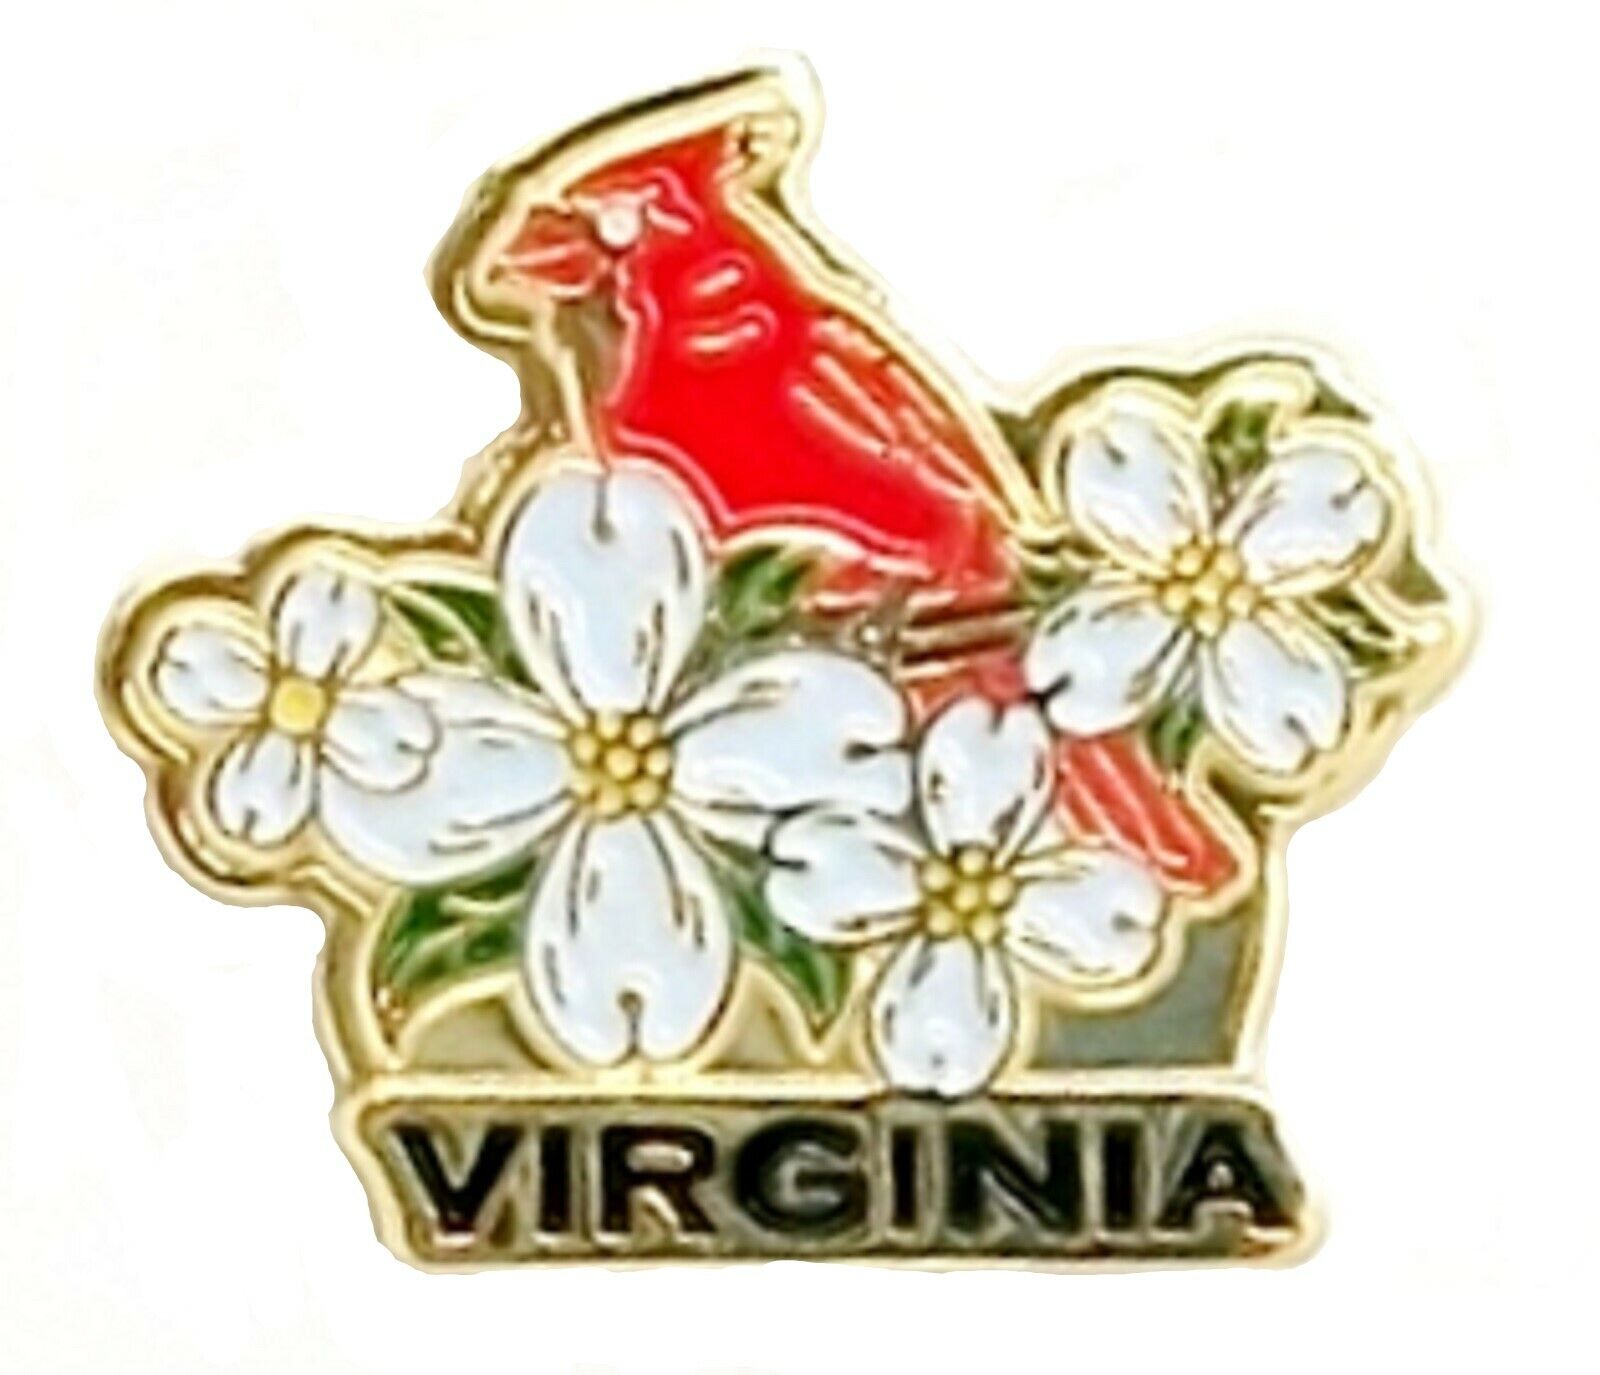 Virginia with Cardinal Hat Tac or Lapel Pin